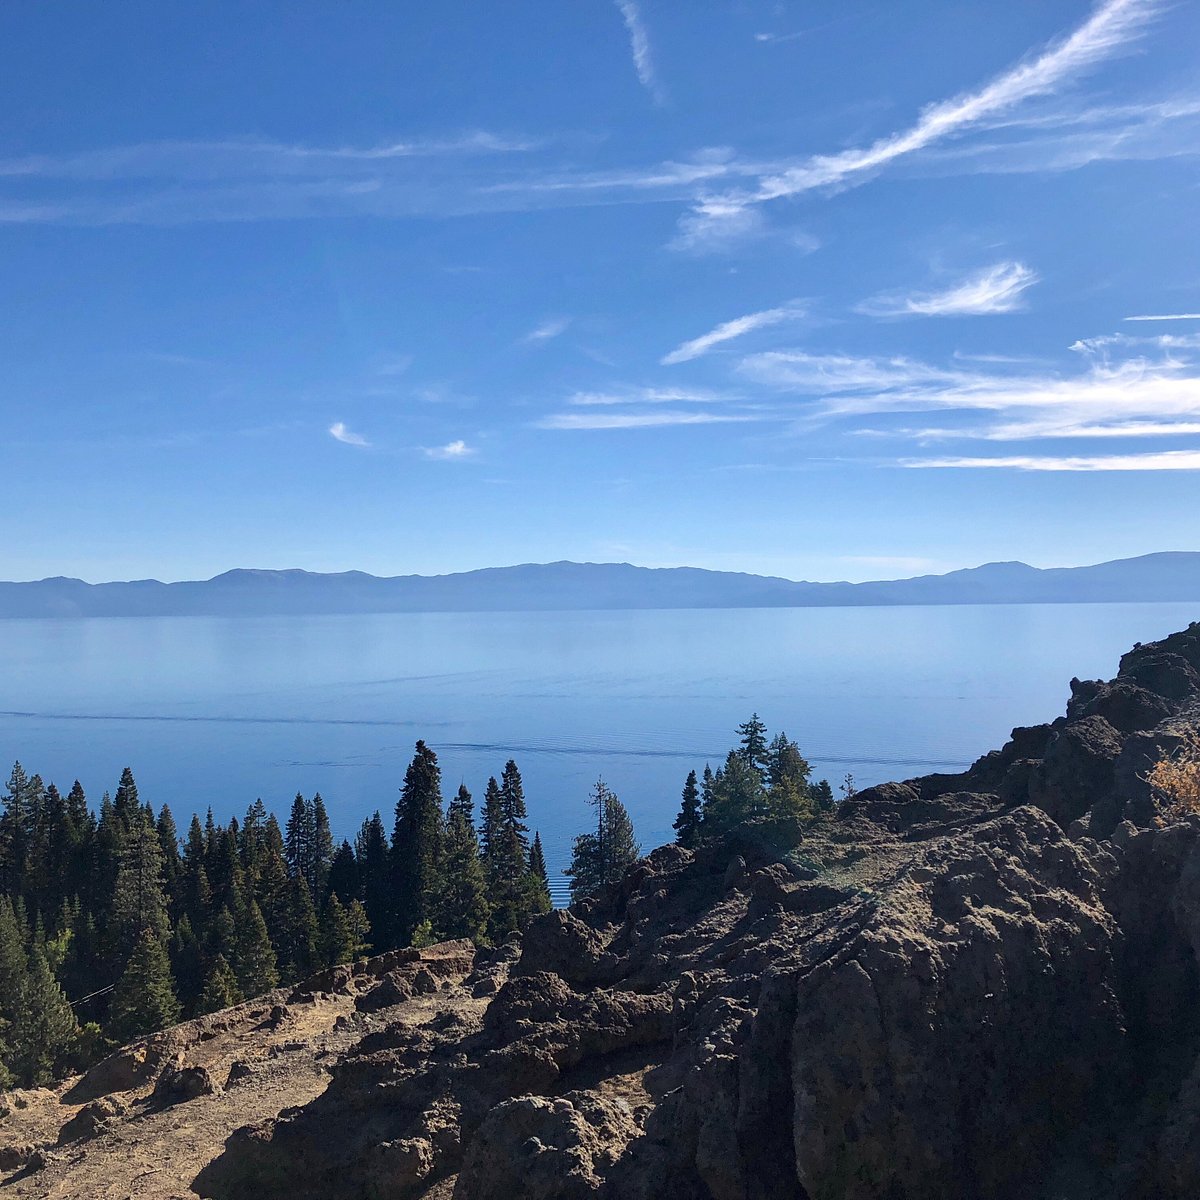 Hiking Eagle Rock Trail To Stunning Views Of Lake Tahoe